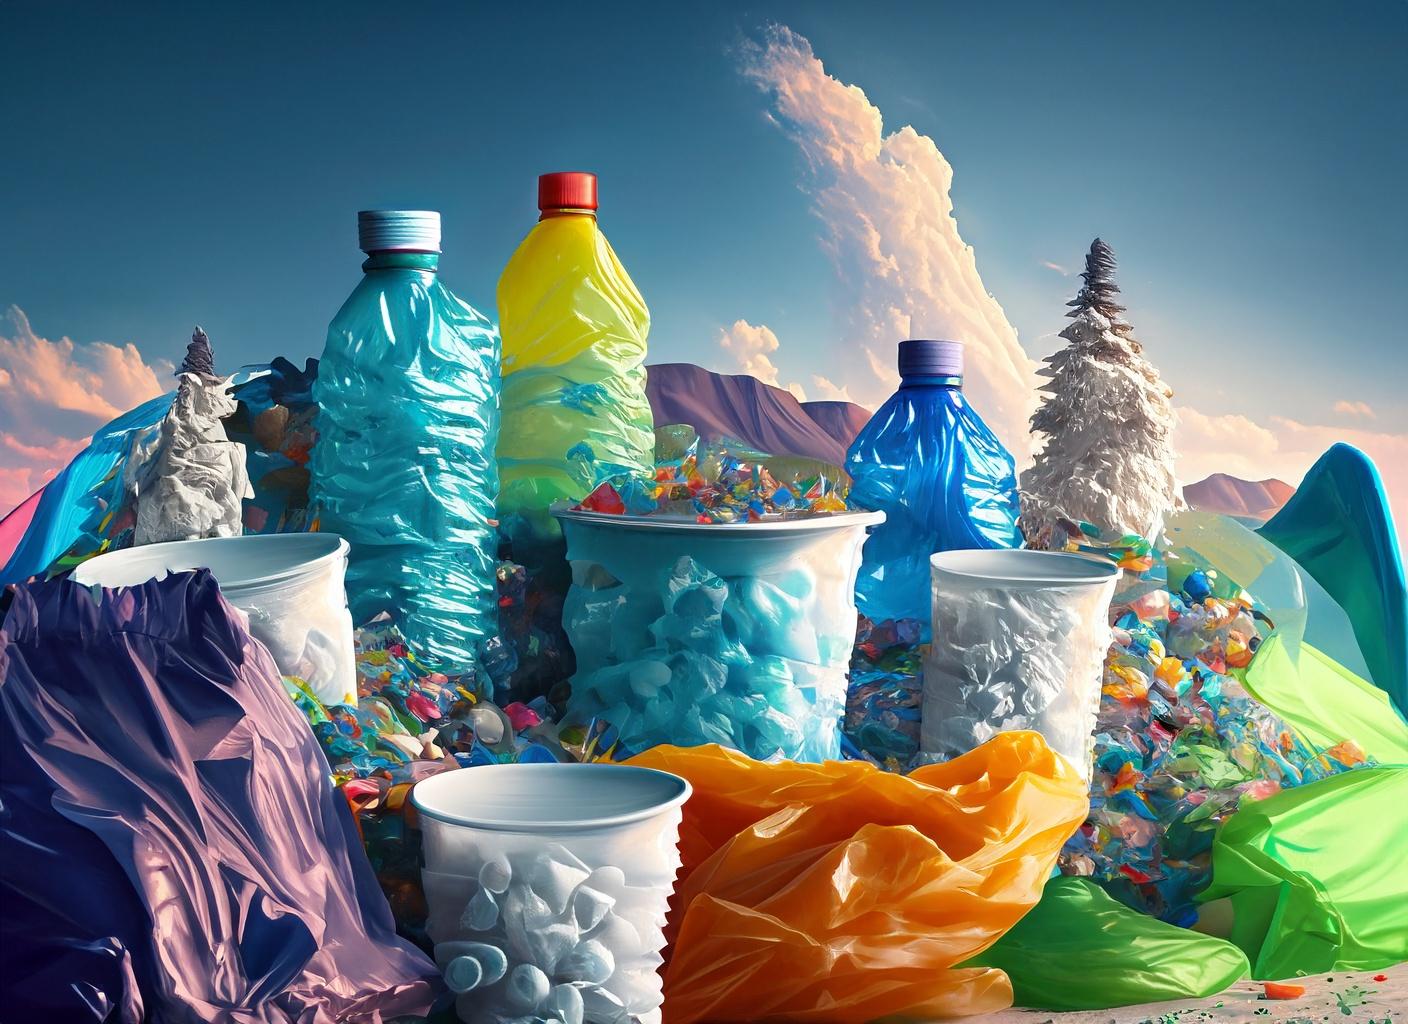 landscape made of plastic bottles